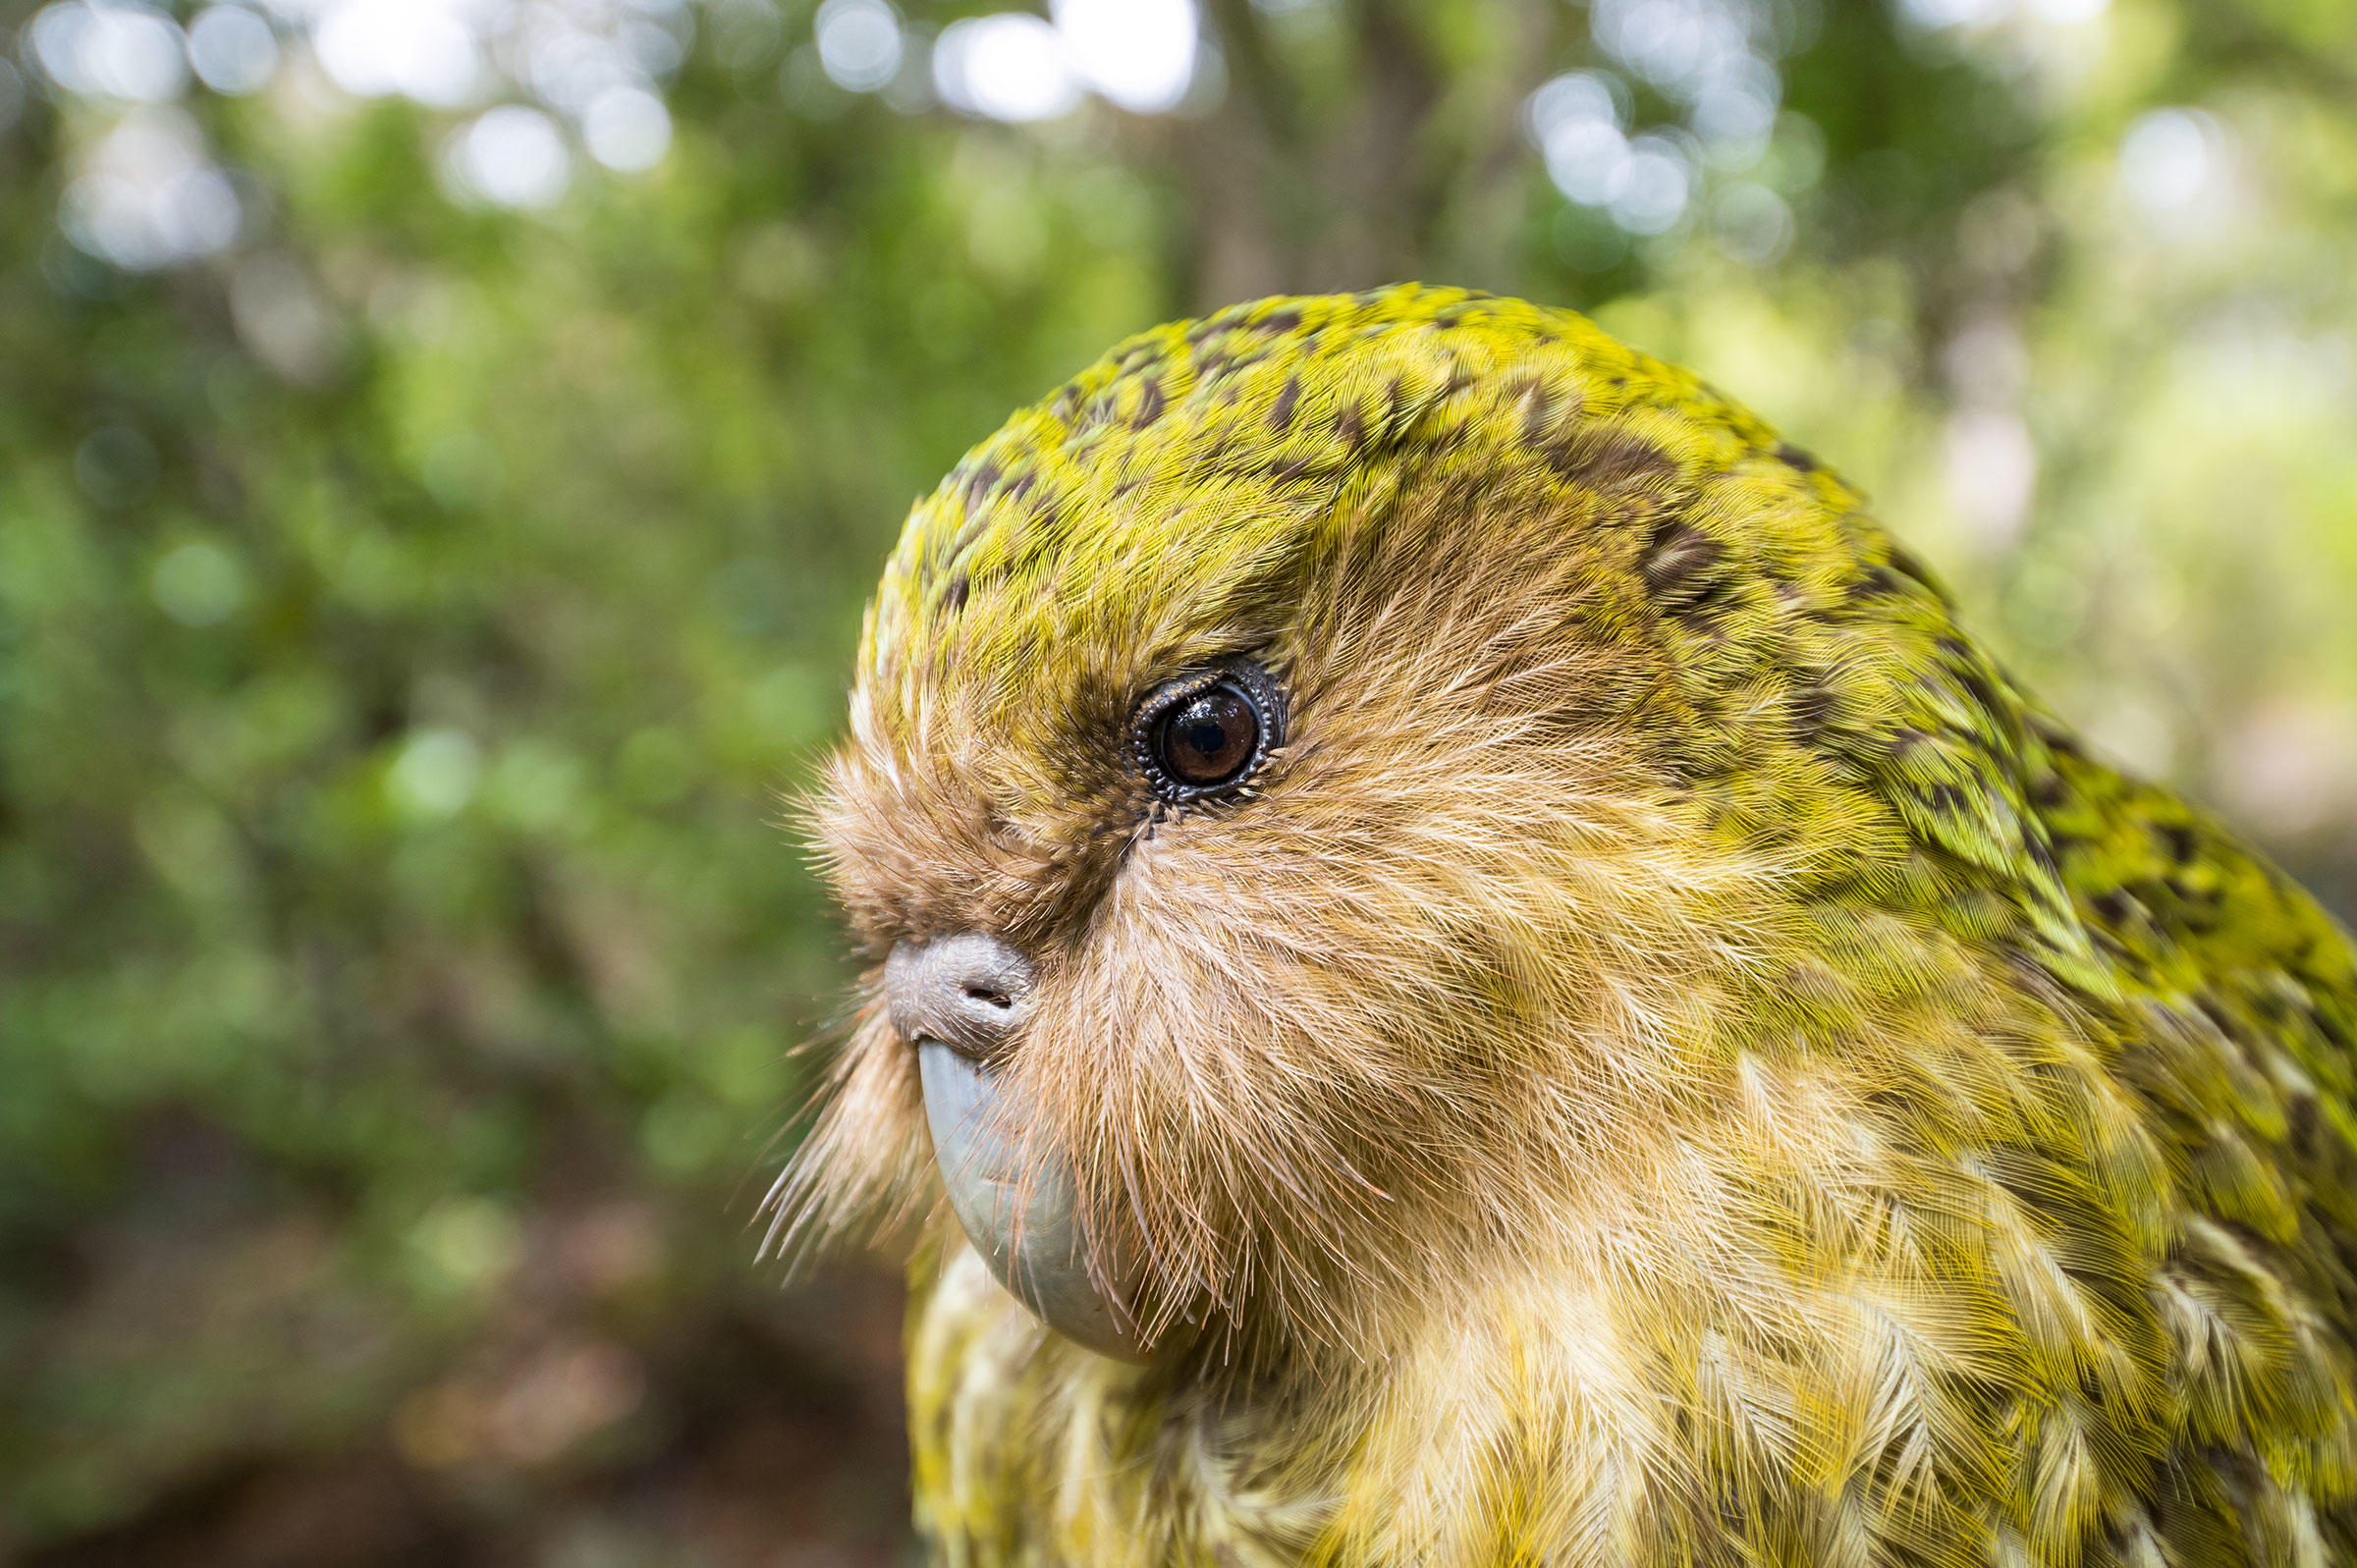 کاکاپو (kākāpō) سنگین ترین طوطی جهان است که بیشترین میزان عمر را در میان پرندگان داشته و در سال 2008 عنوان پرنده سال نیوزیلند را بدست آورد.